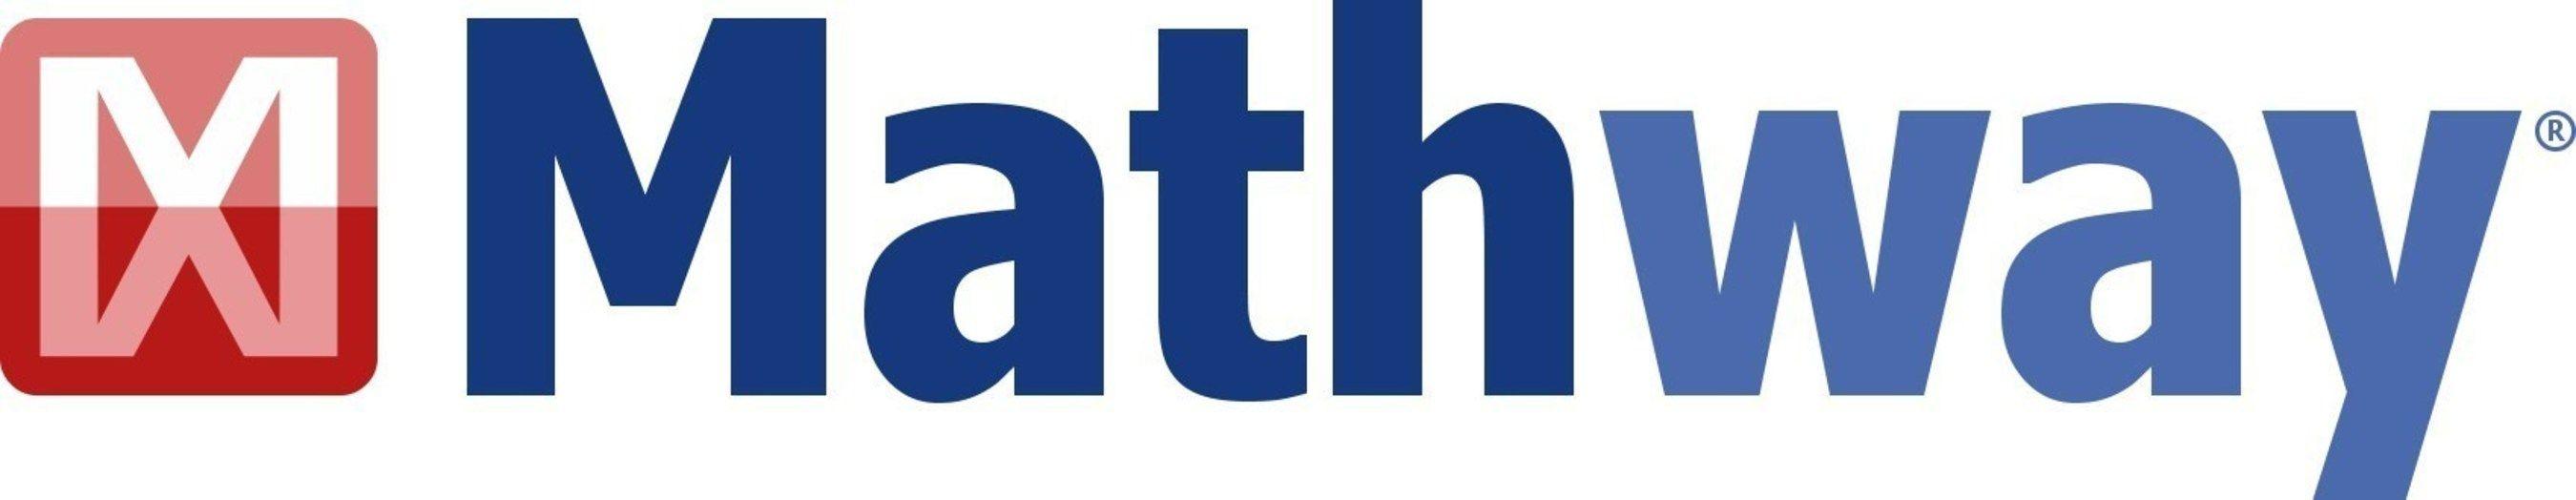 Mathway Logo - Got a Math Problem? Just Ask Mathway